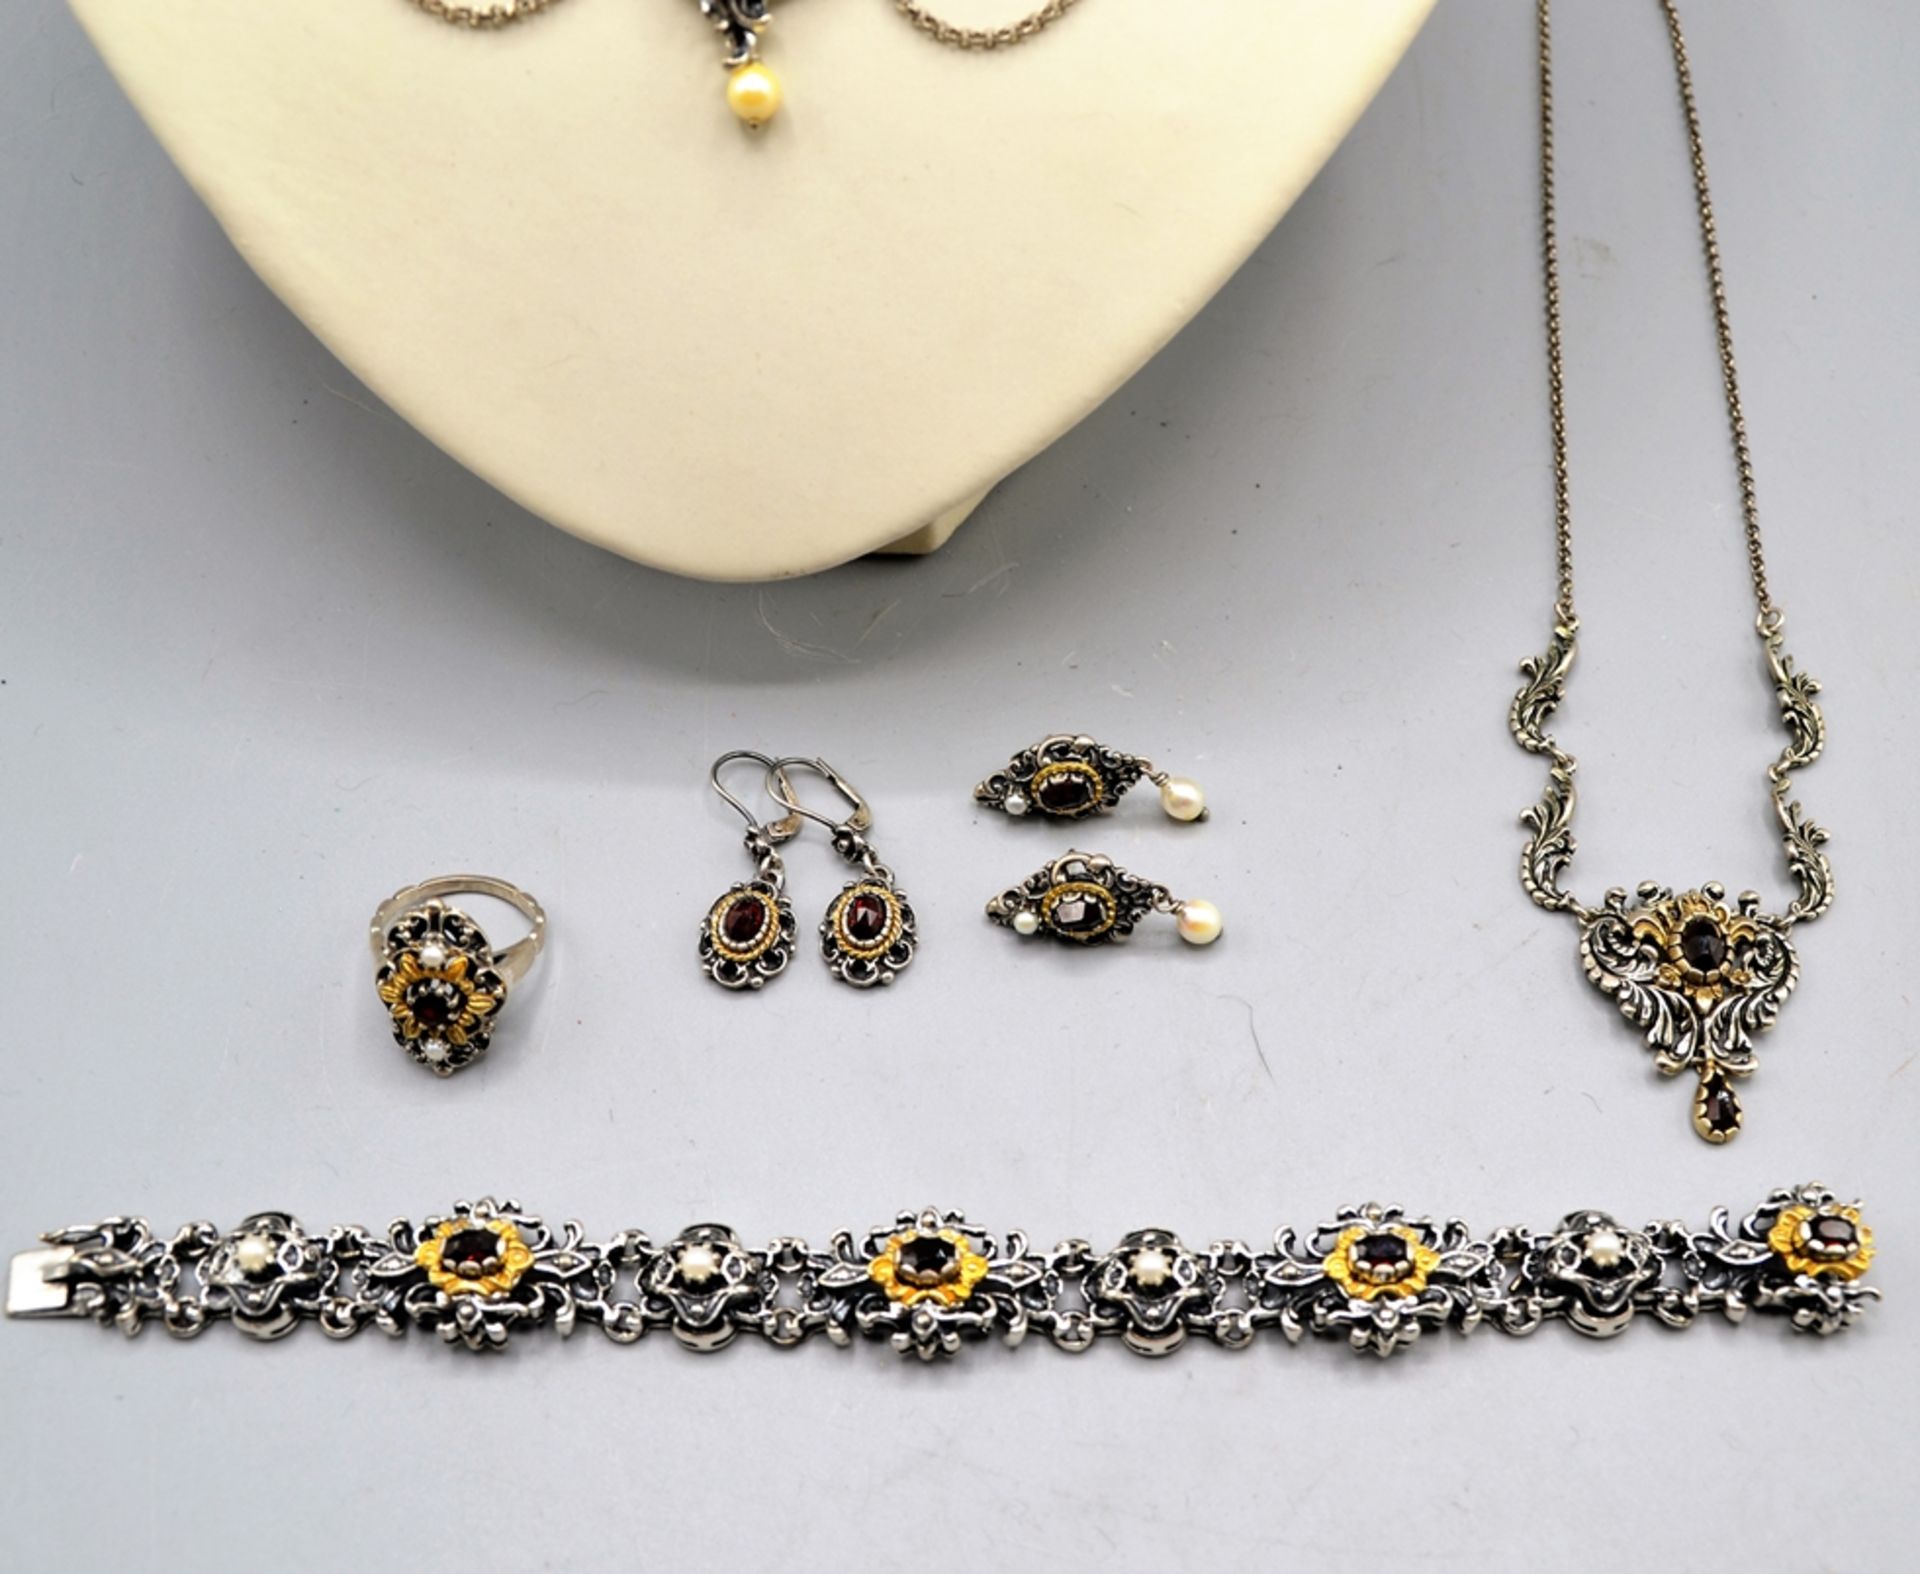 Trachtenschmuck Silberschmuck Set Granat Perlen 6-teilig, 2 Collier, 1 Armband, 1 Ring, Ohrstecker - Image 2 of 2